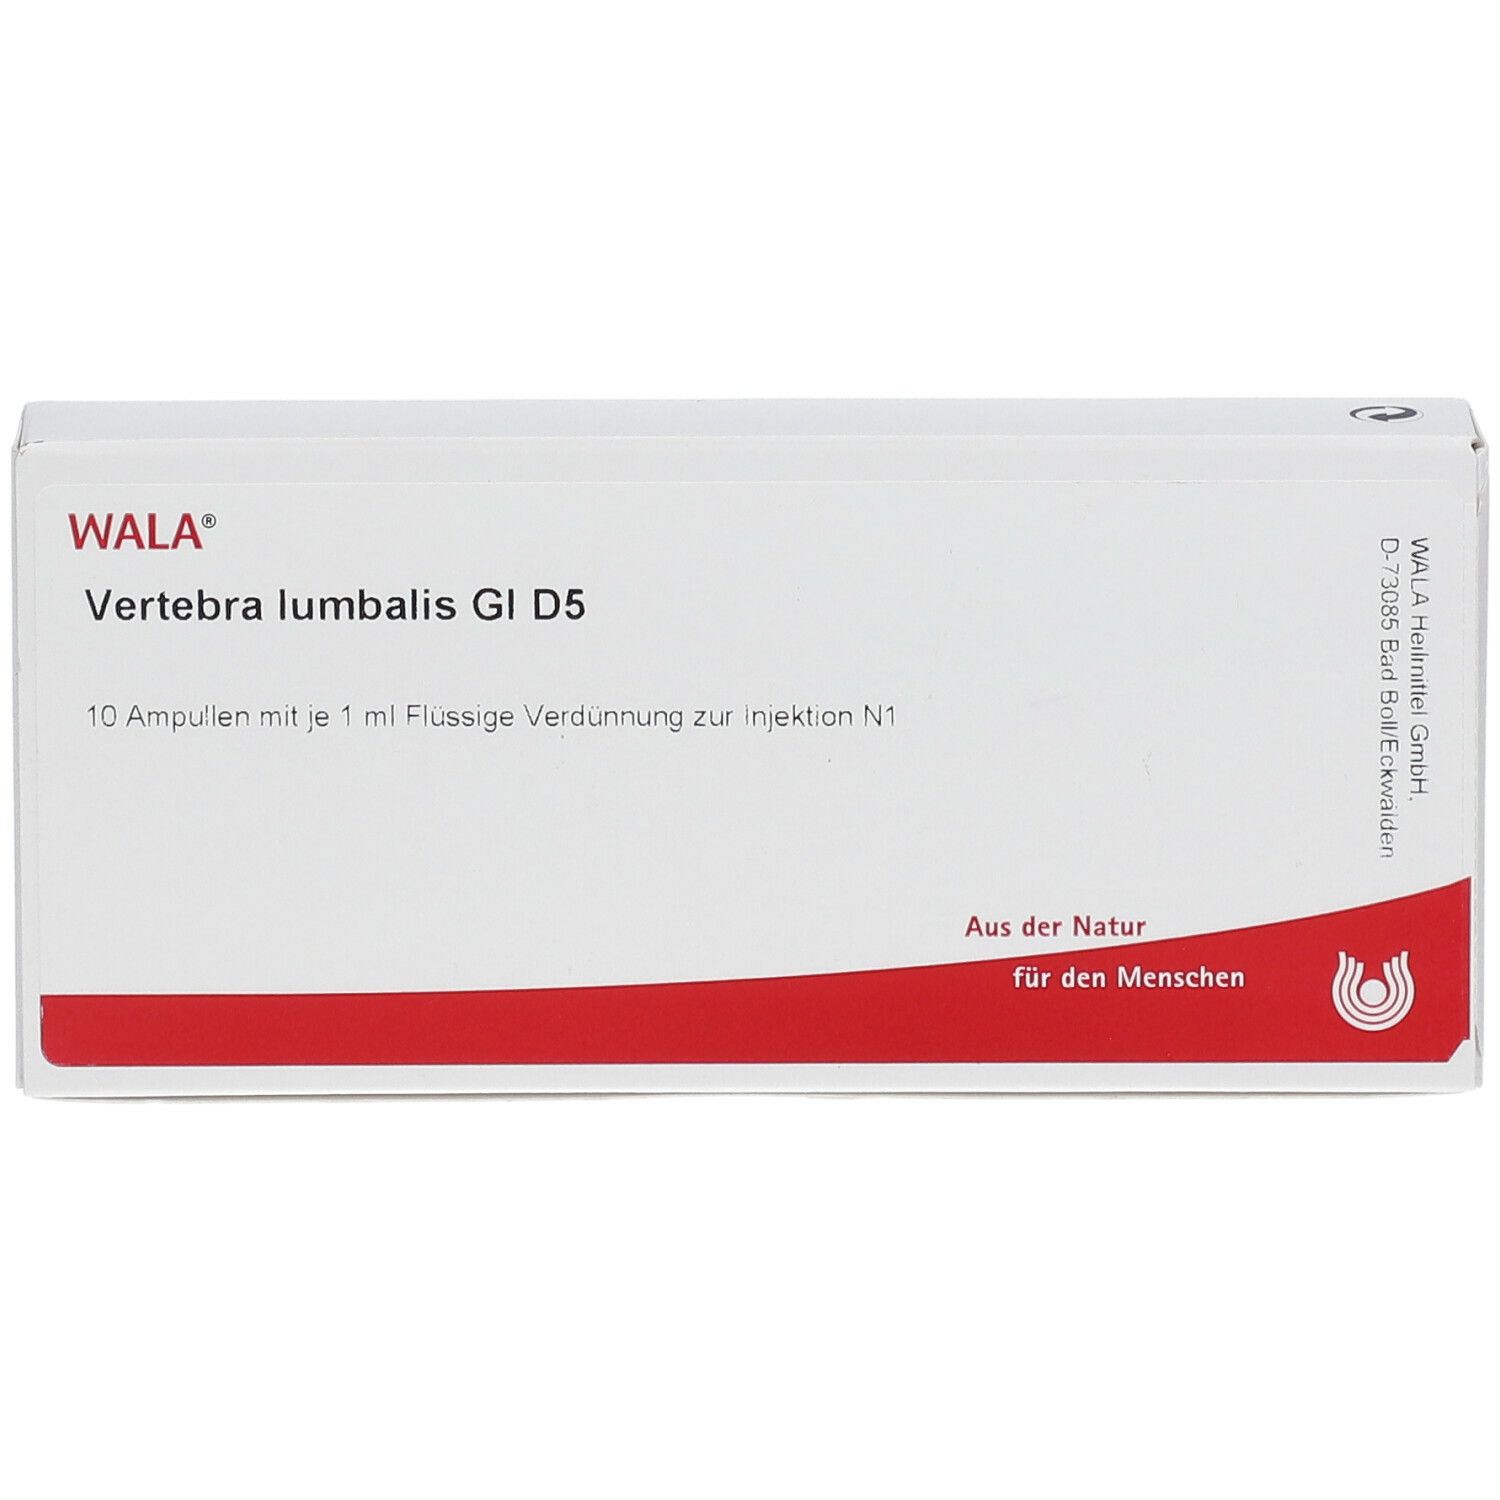 WALA® Vertebra lumbalis Gl D 5